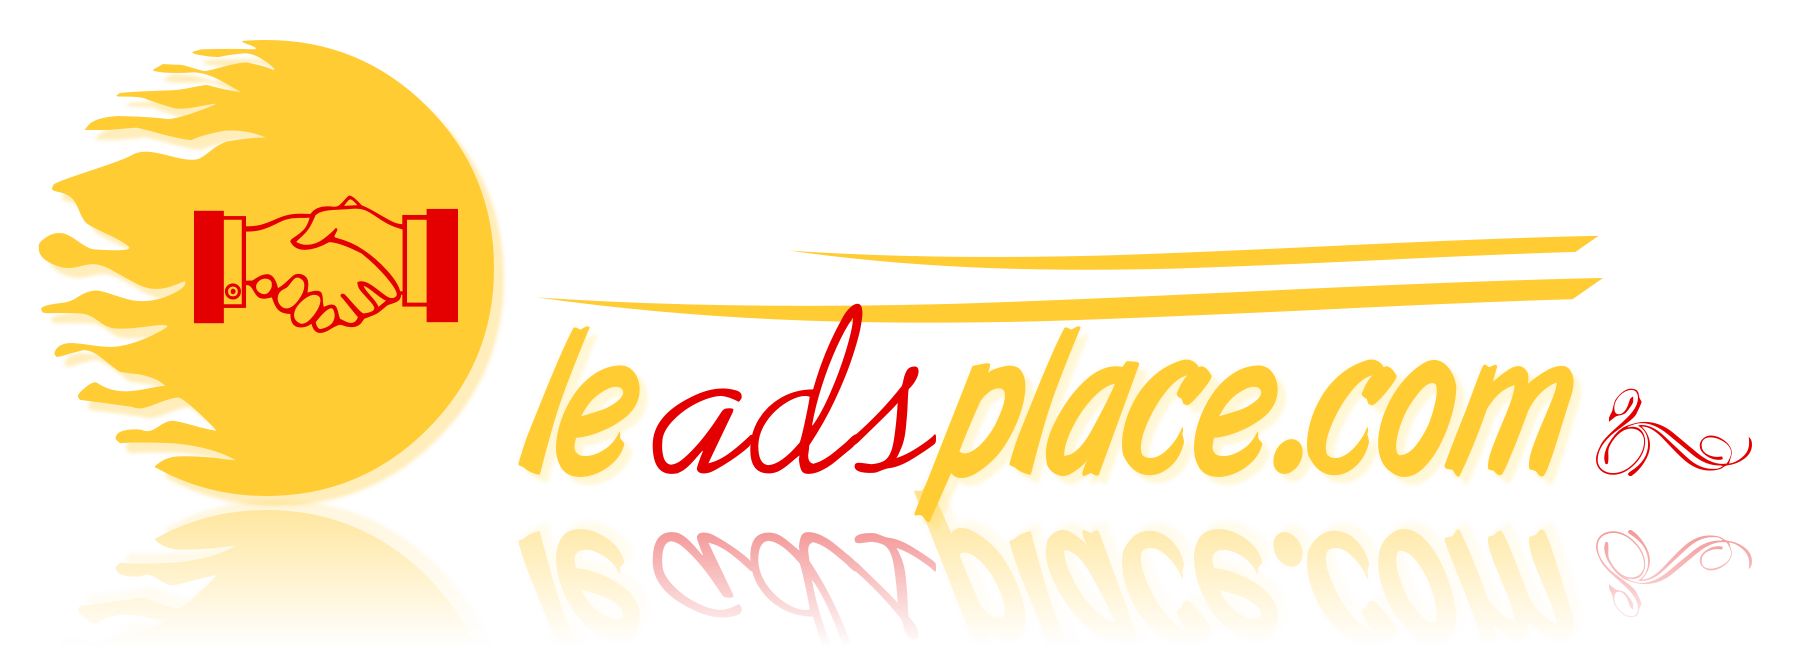 leadsplace.com - логотип - дизайнер BeSSpaloFF